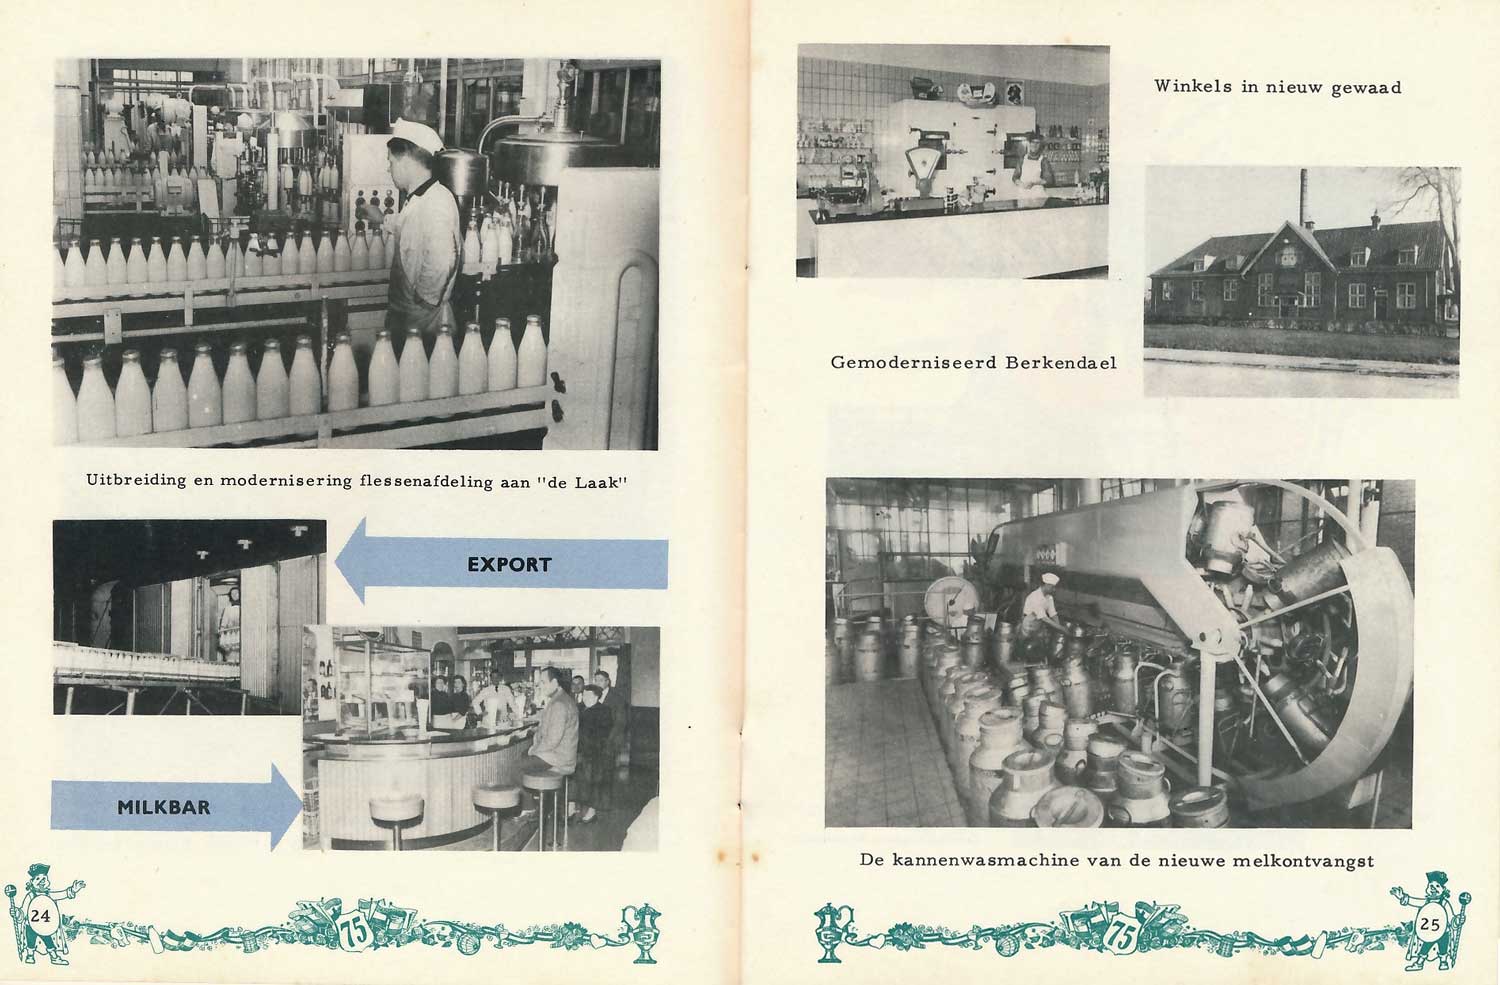 De Sierkan, melkfabriek, vernieuwingen, 1956